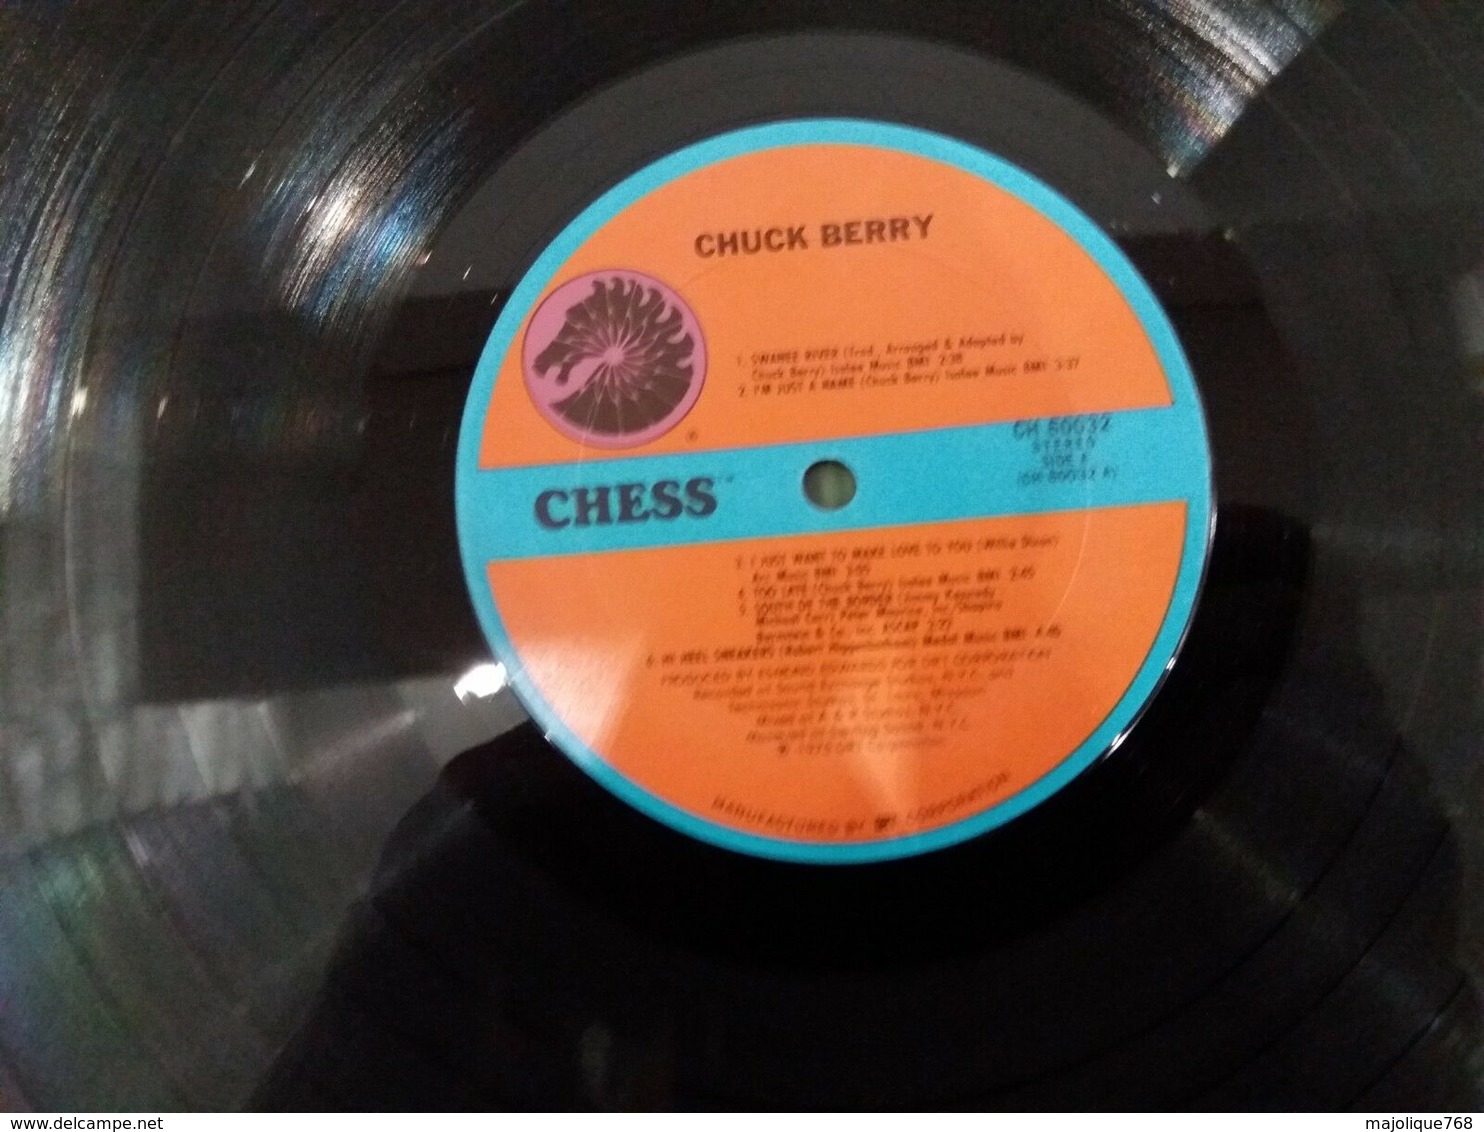 Chuck Berry - Swanee River - Chess CH 60032 - 1975  Vinyl LP Original USA - Les Coins Sont Coupés  - - Rock